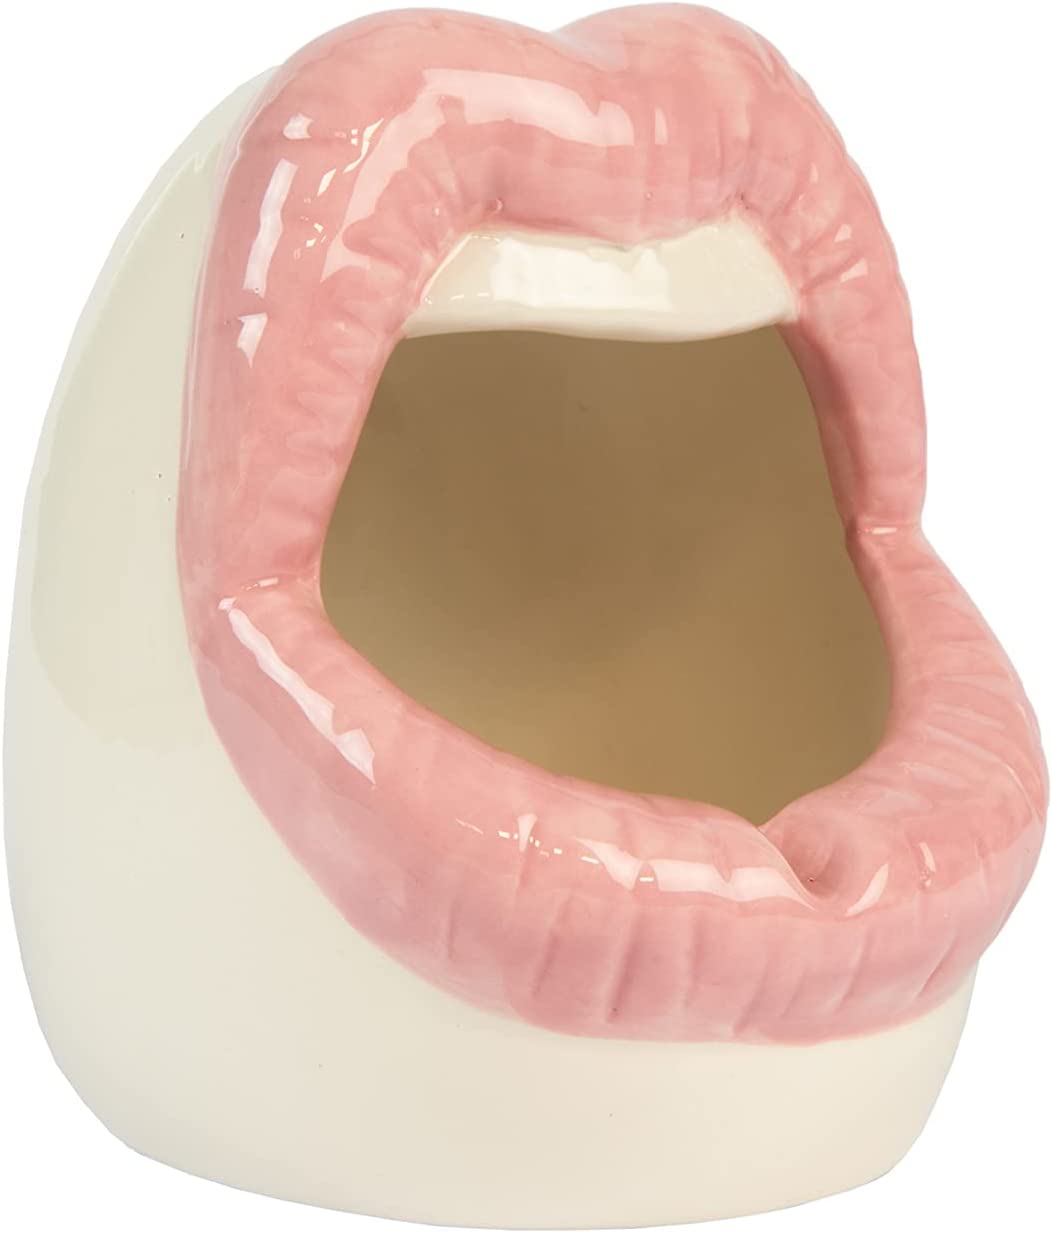 Lips Pot - Multi-purpose container/Ashtray